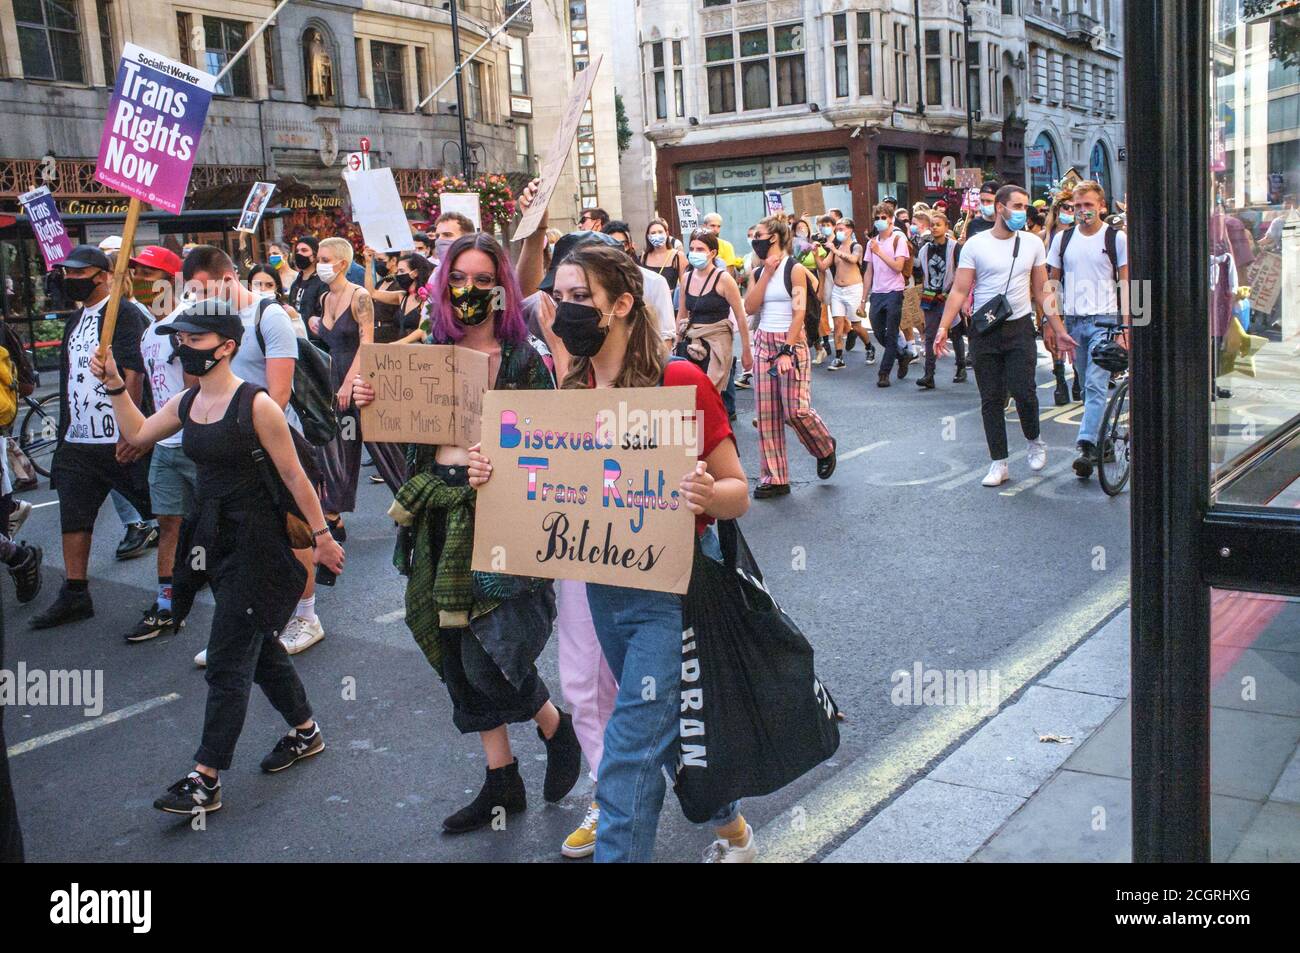 12 septembre, Londres, Royaume-Uni. Les personnes trans passent par Londres pour une réforme progressive de la loi sur la reconnaissance du genre (la loi qui régit la façon dont les hommes et les femmes trans adultes obtiennent la reconnaissance légale de leur sexe), et contre la rhétorique transphobie. Ils font campagne pour que leurs droits soient garantis par la loi sur l'égalité et se tiennent contre l'ingérence politique dans les soins de santé pour les jeunes trans. Les organisateurs sont préoccupés par la montée récente de la violence à l'égard de la communauté trans+. Ce n'est que la deuxième marche que le groupe a tenu à Londres. Bridget Catterall/Alamy Live News Banque D'Images